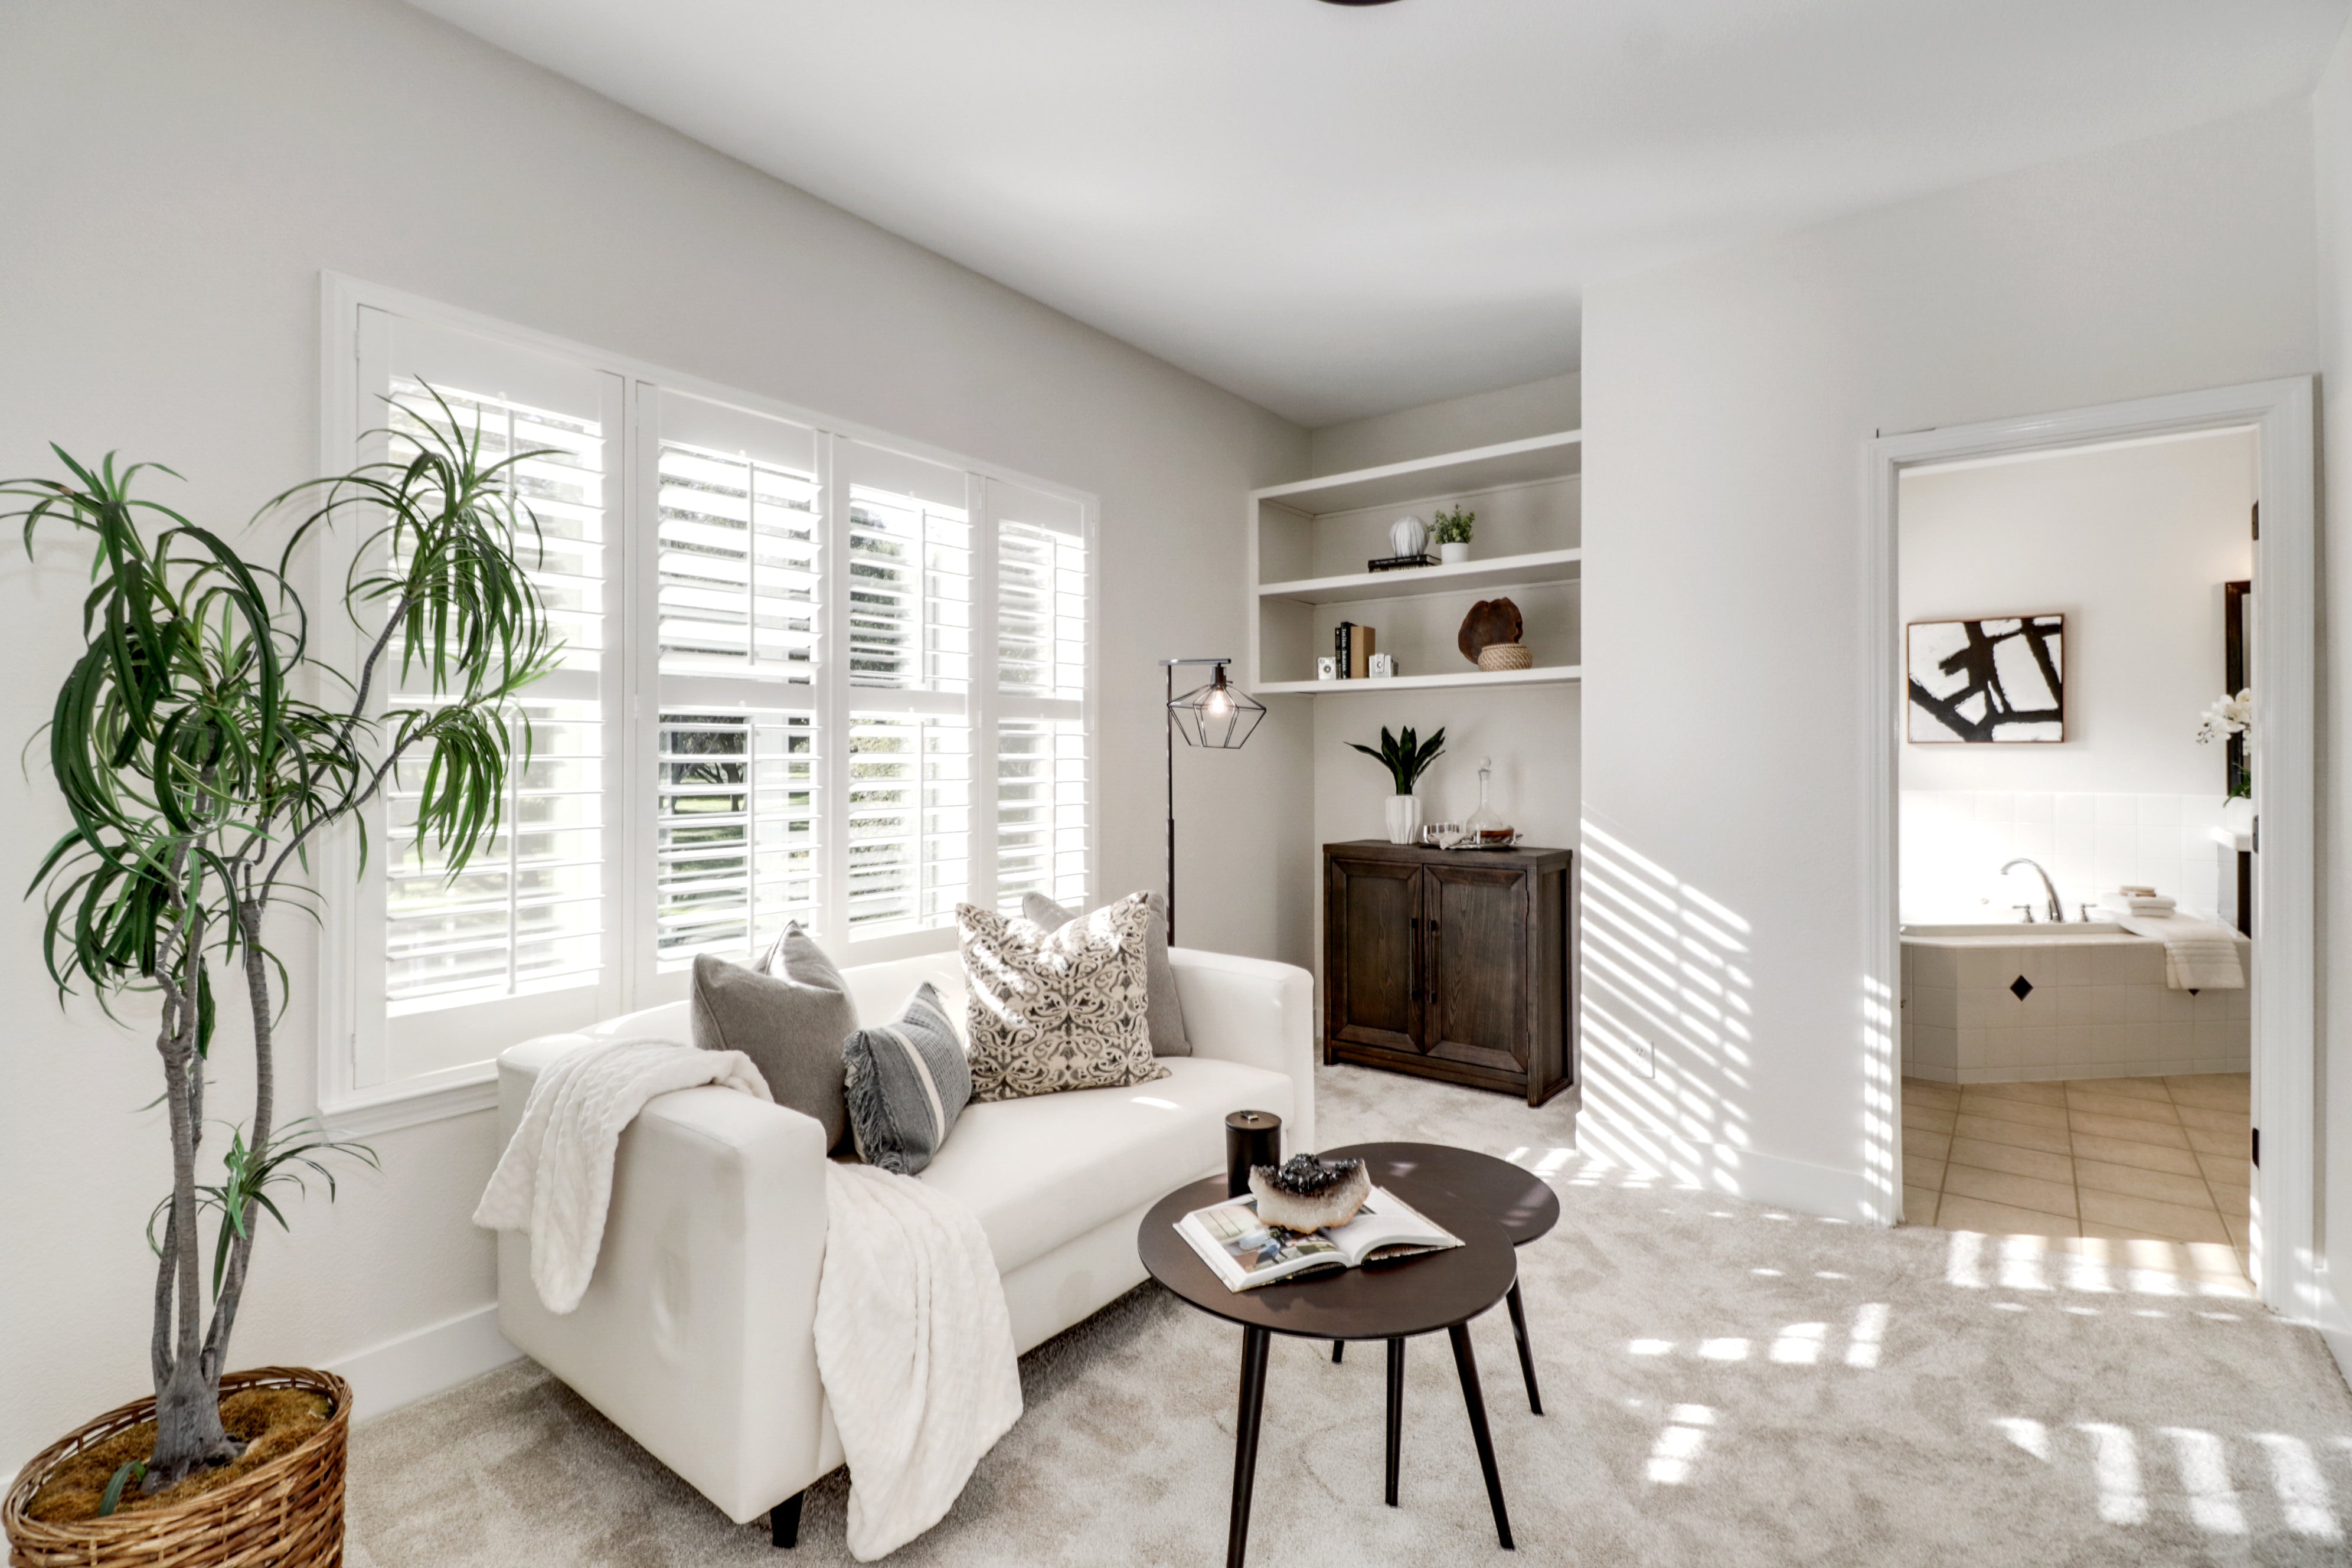 Premiere Home Staging Projects | Bedroom retreat interior design idea - Barton Rd, Granite Bay